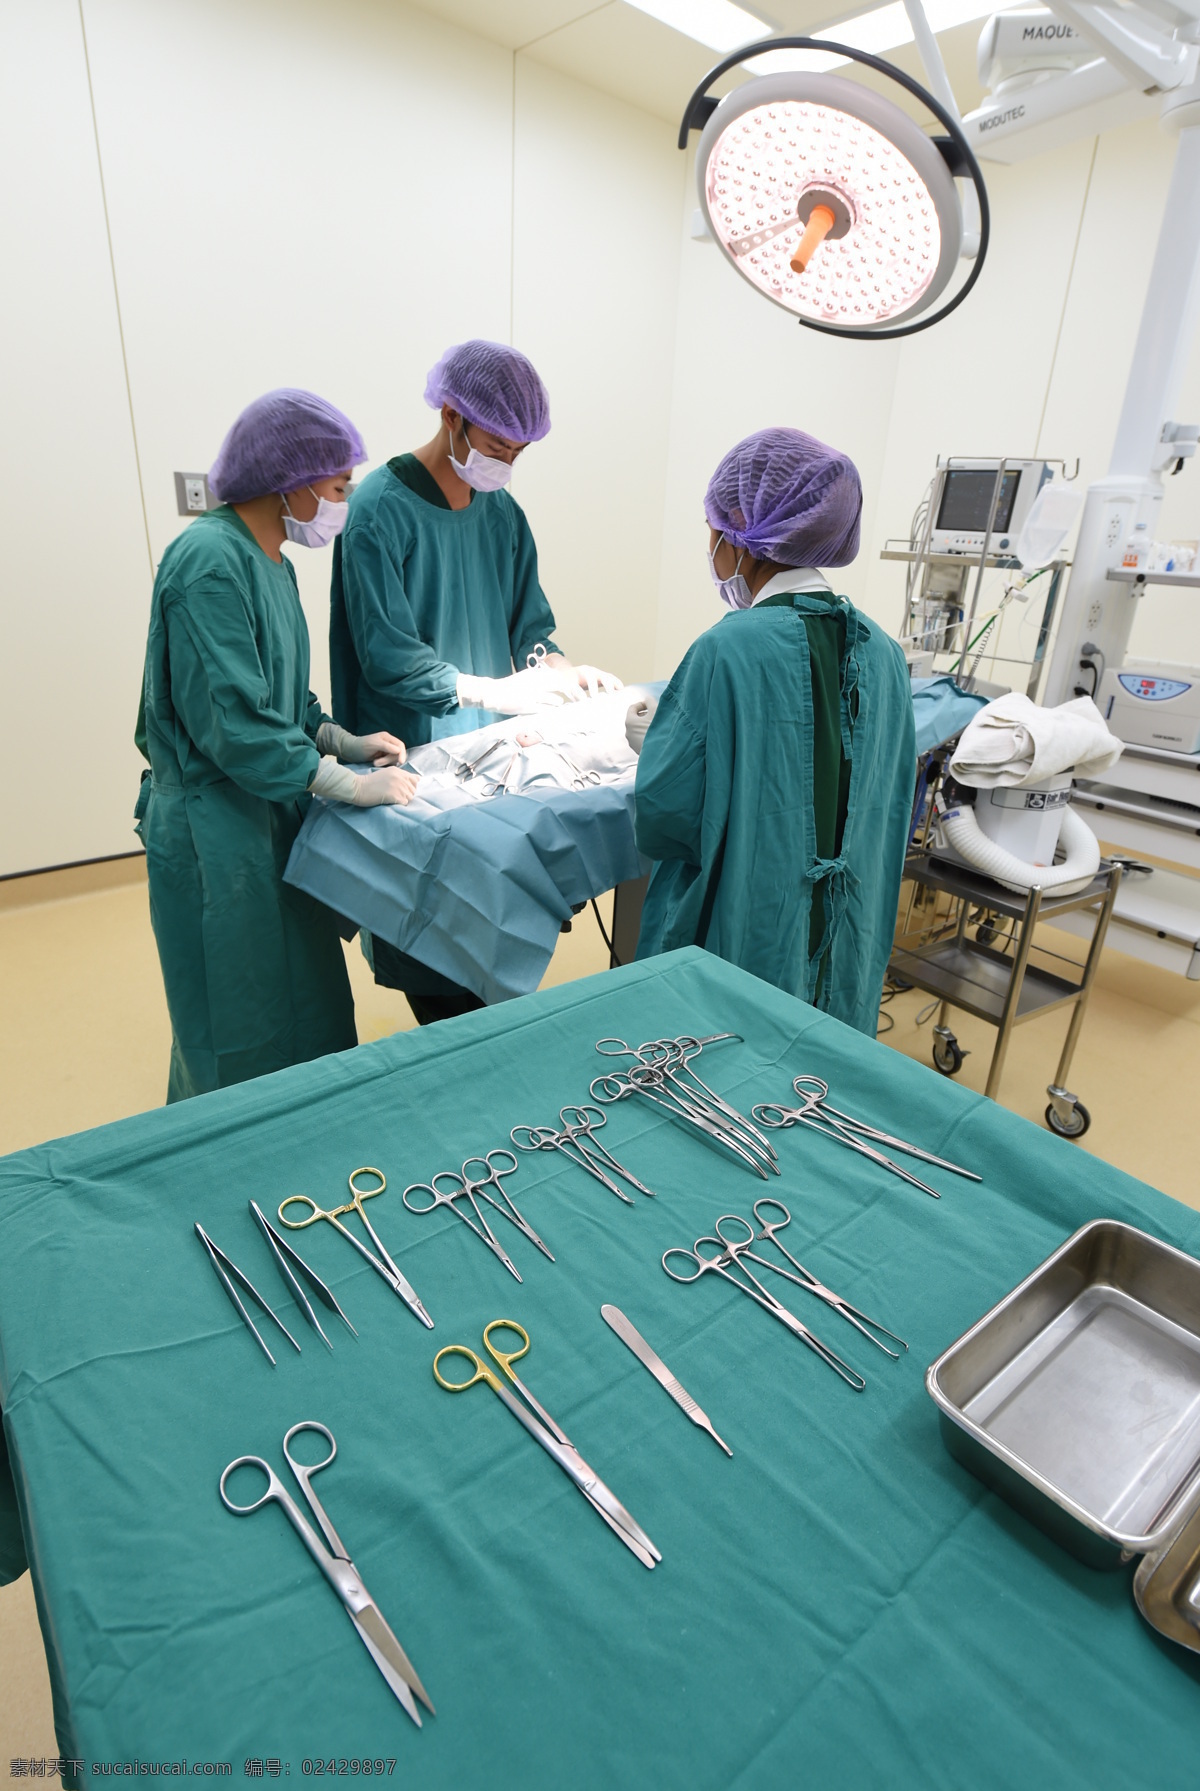 手术室 里 做 手术 医生 做手术 医疗护理 手术医生 外科医生 护士 天使 医务人员 职业人物 现代科技